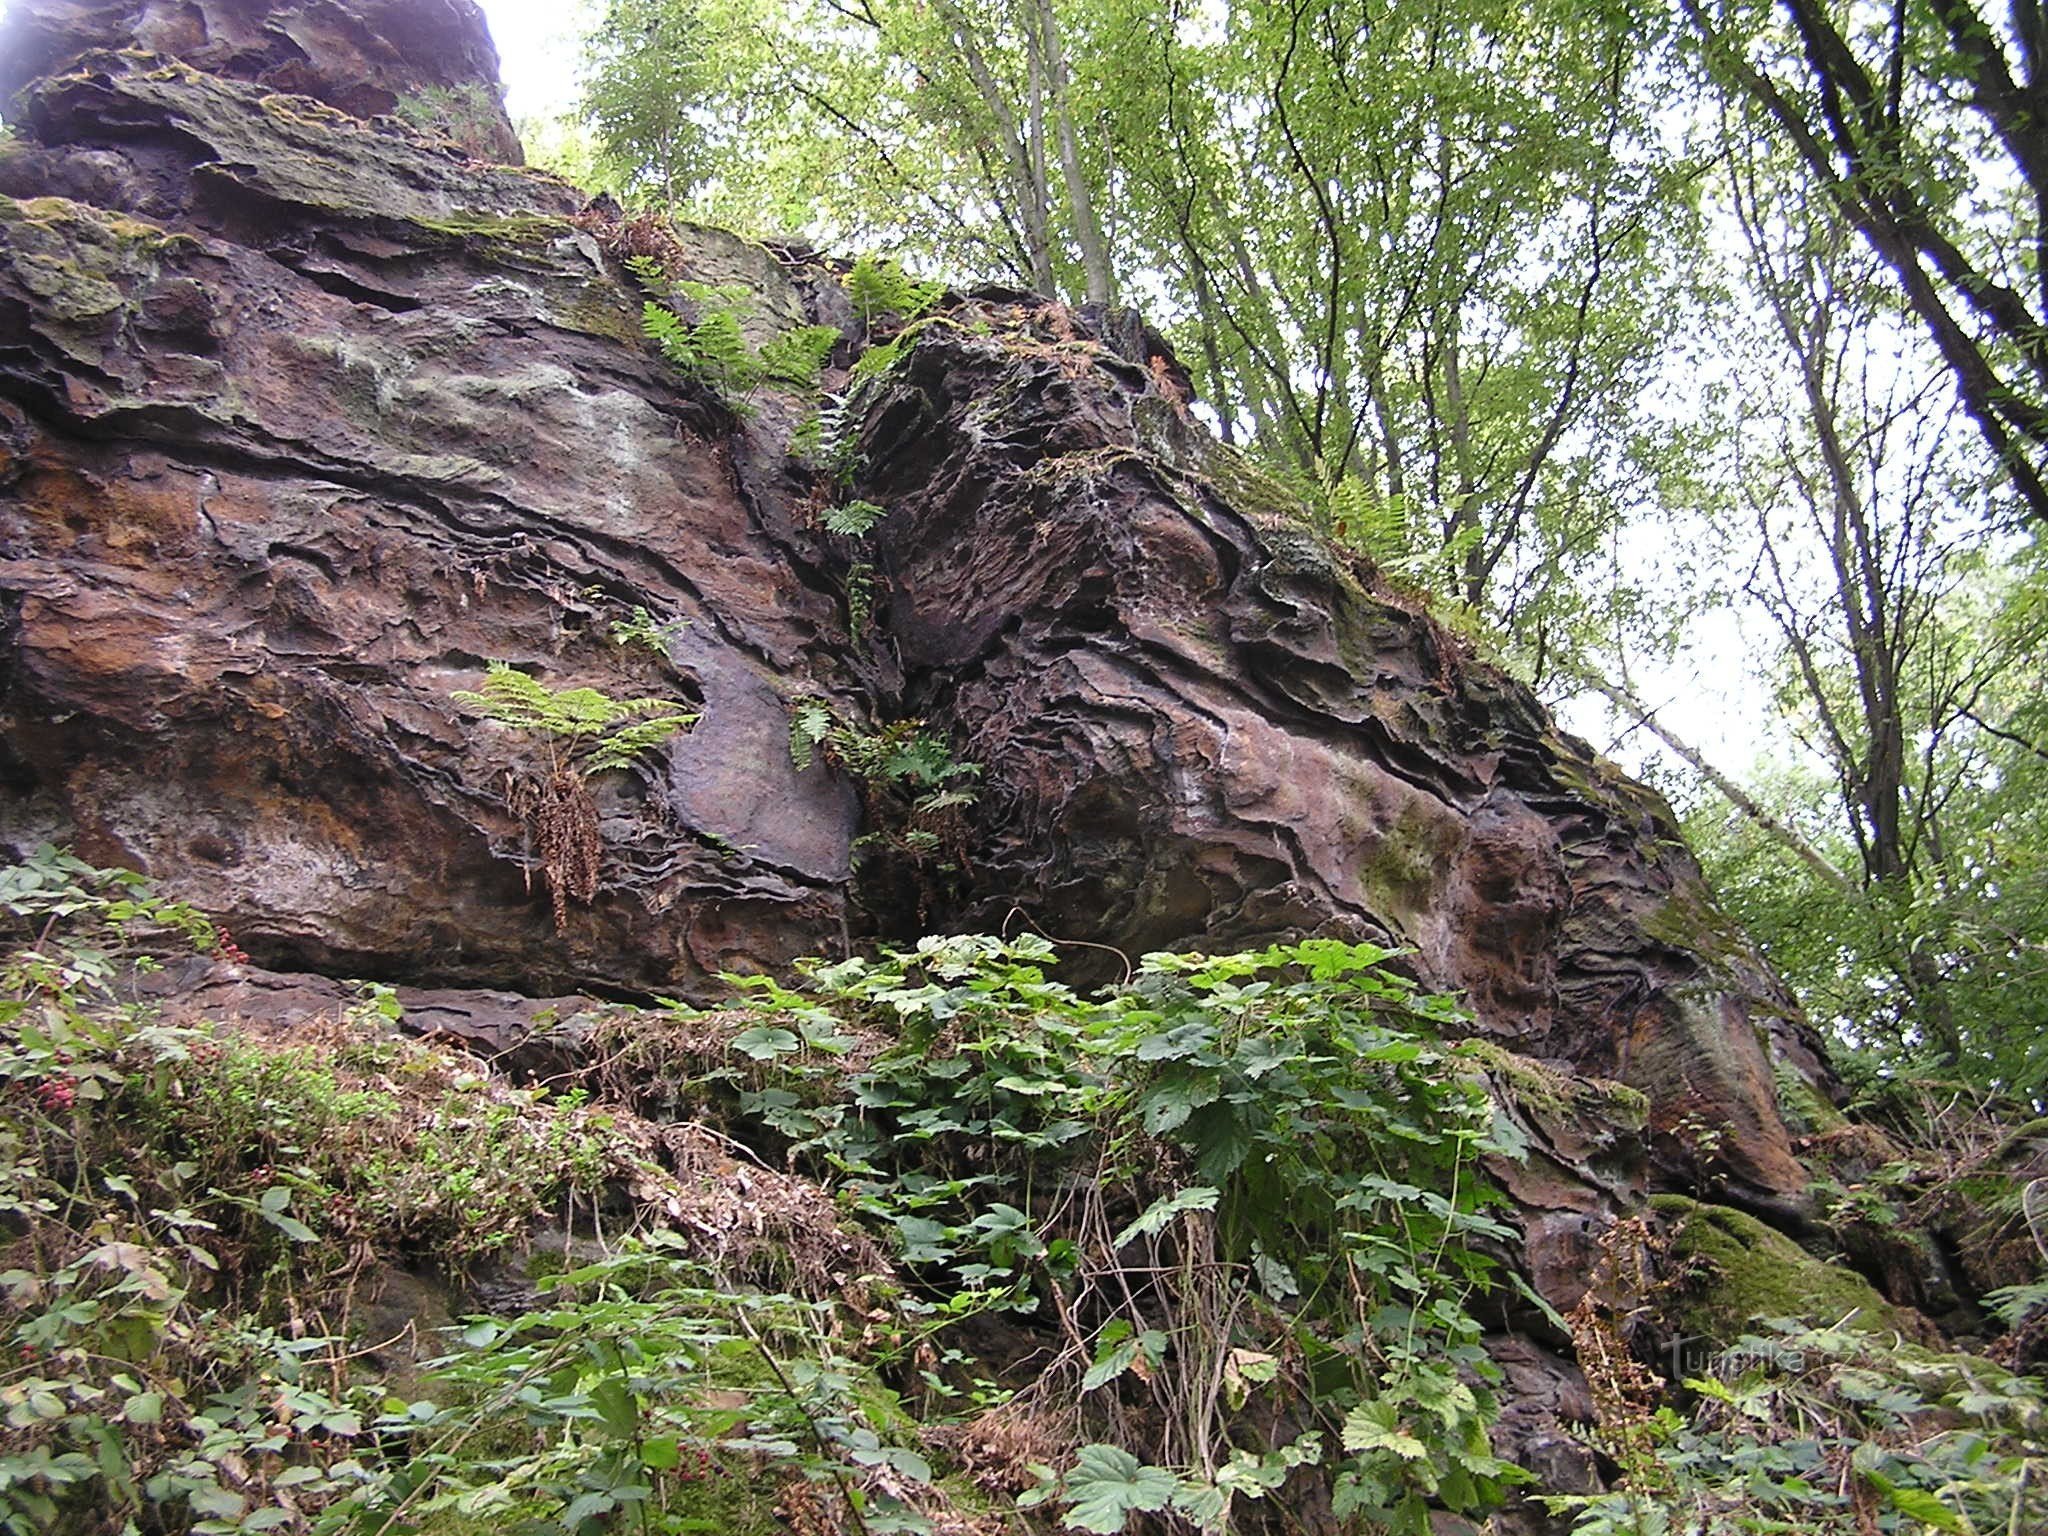 Kamenný vrch perto de Křenov (9/2015)